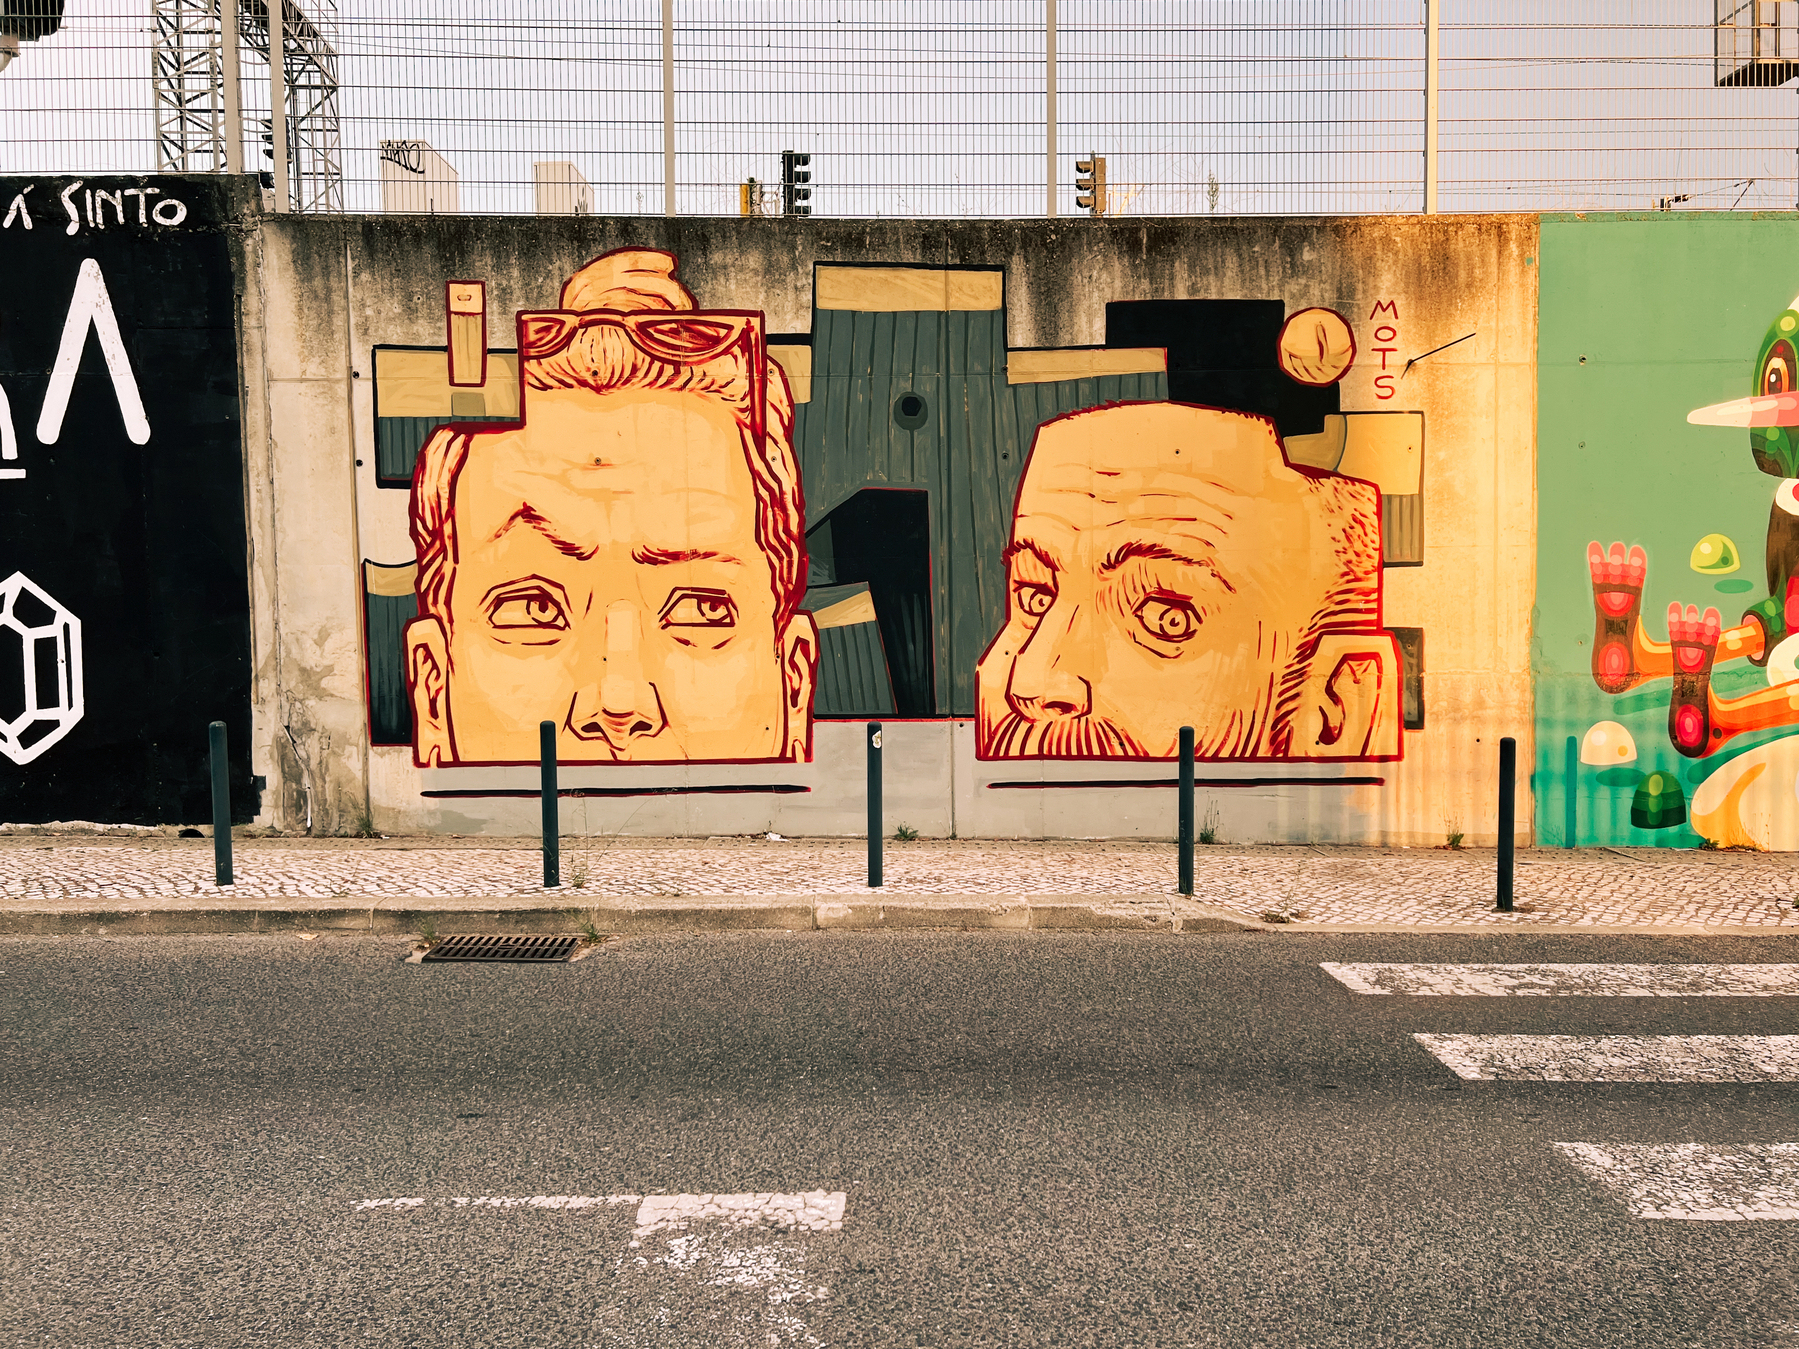 Street art. Two portraits side by side.